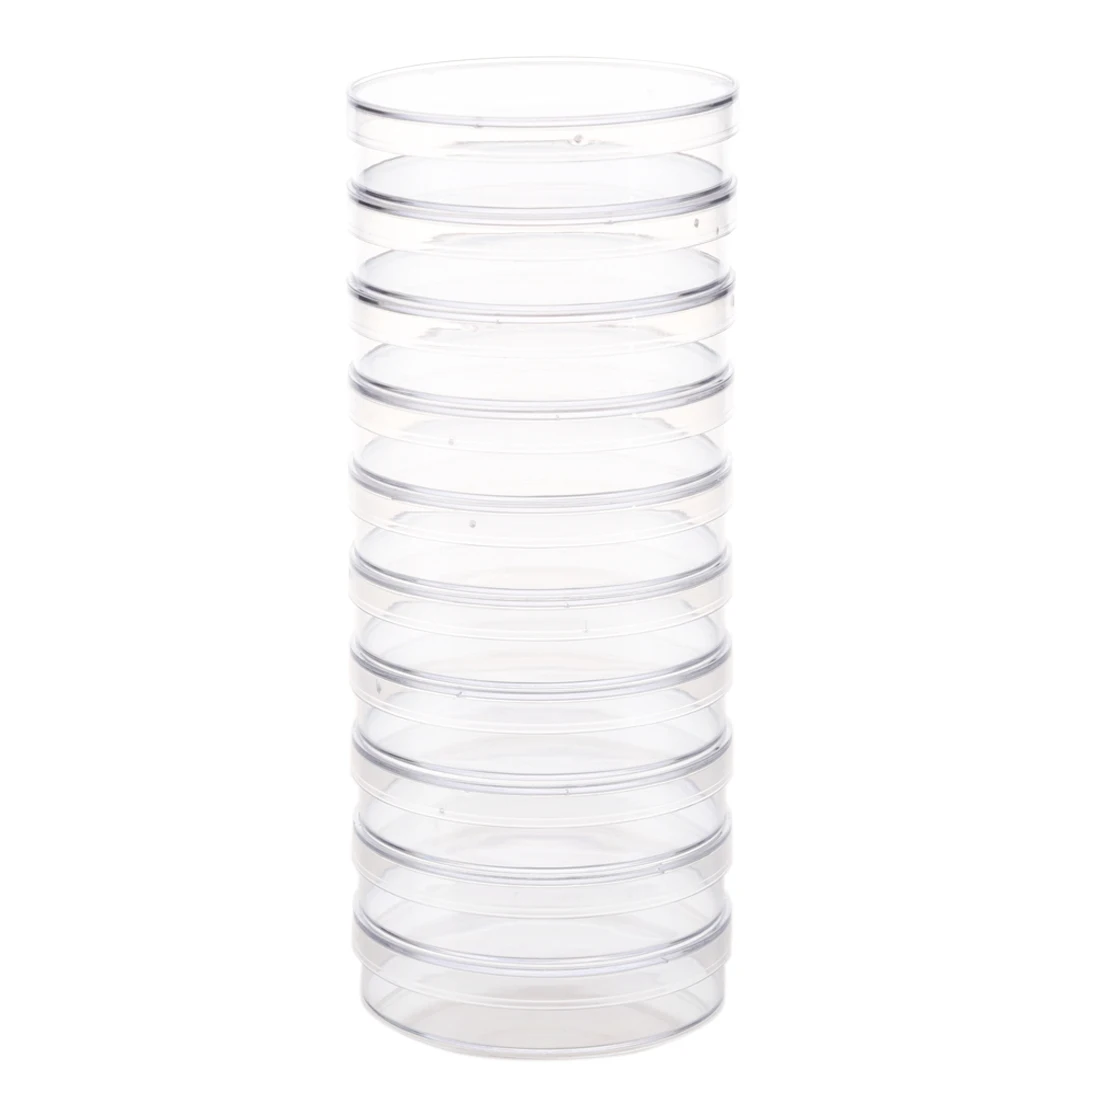 AAAJ-10Pcs стерильные чашки Петри с крышками для лабораторная пластина бактериальные дрожжи 55 мм x 15 мм